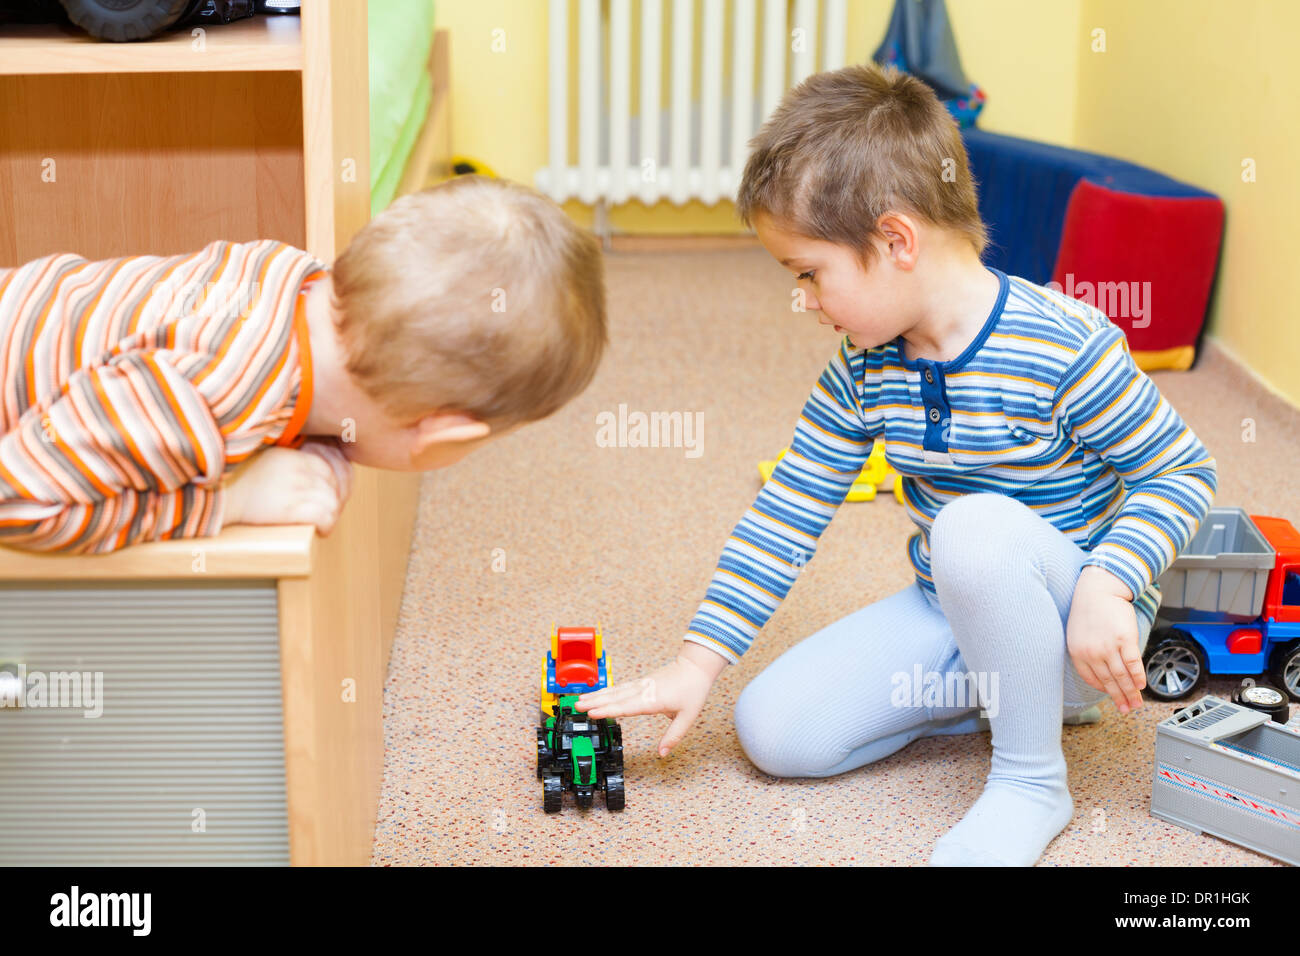 Deux enfants jouent avec des jouets à la maison Banque D'Images